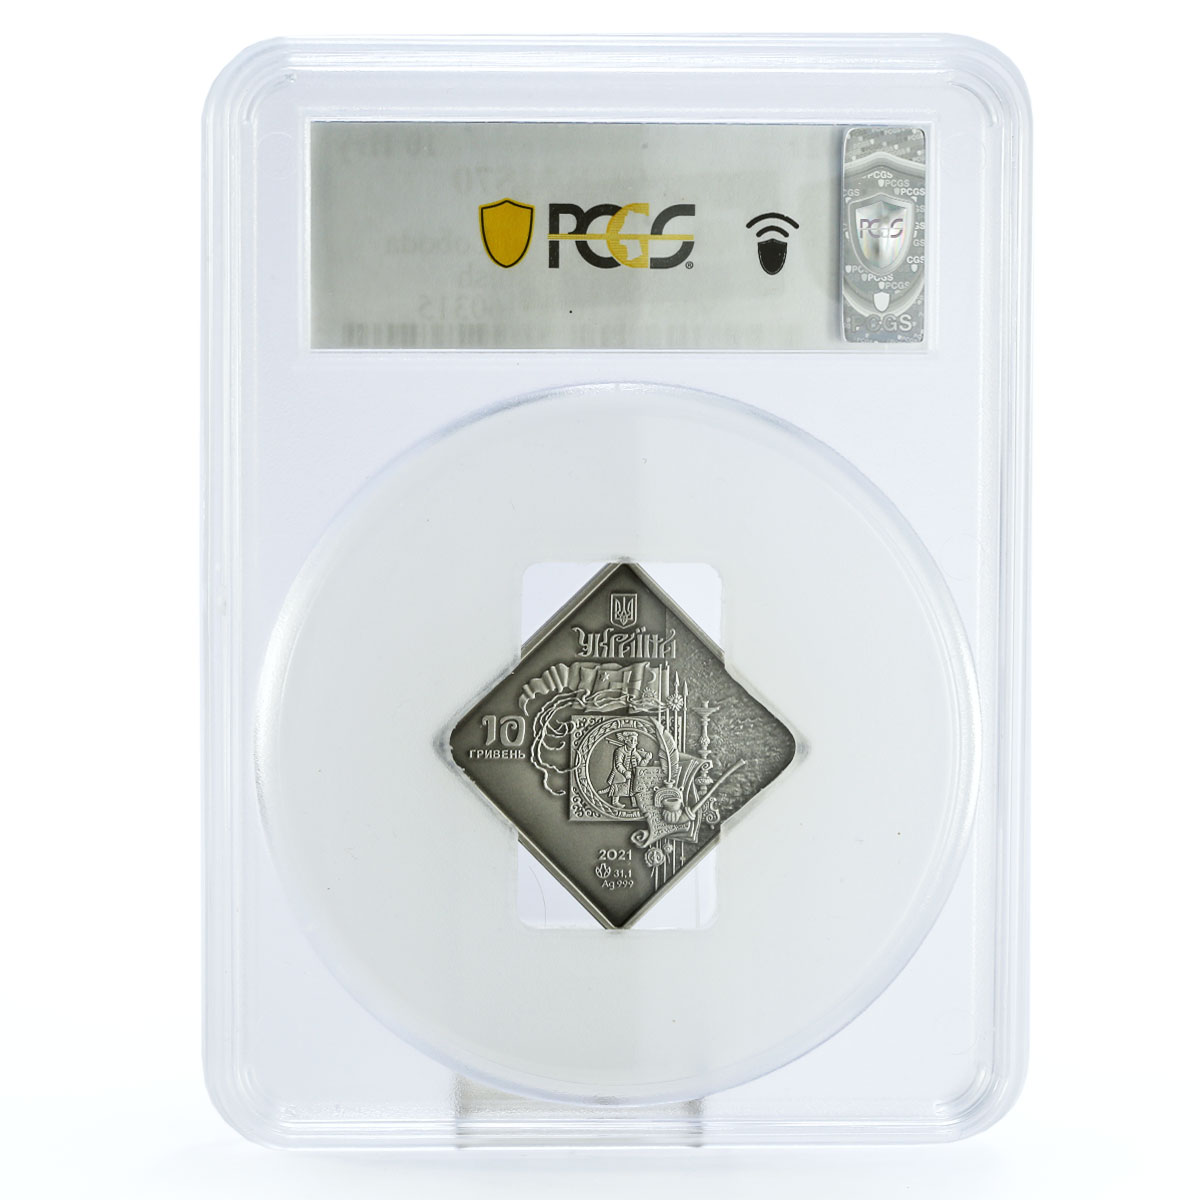 Ukraine 10 hryvnias Cossack Regalias Getmans Loboda MS70 PCGS Ag coin 2021